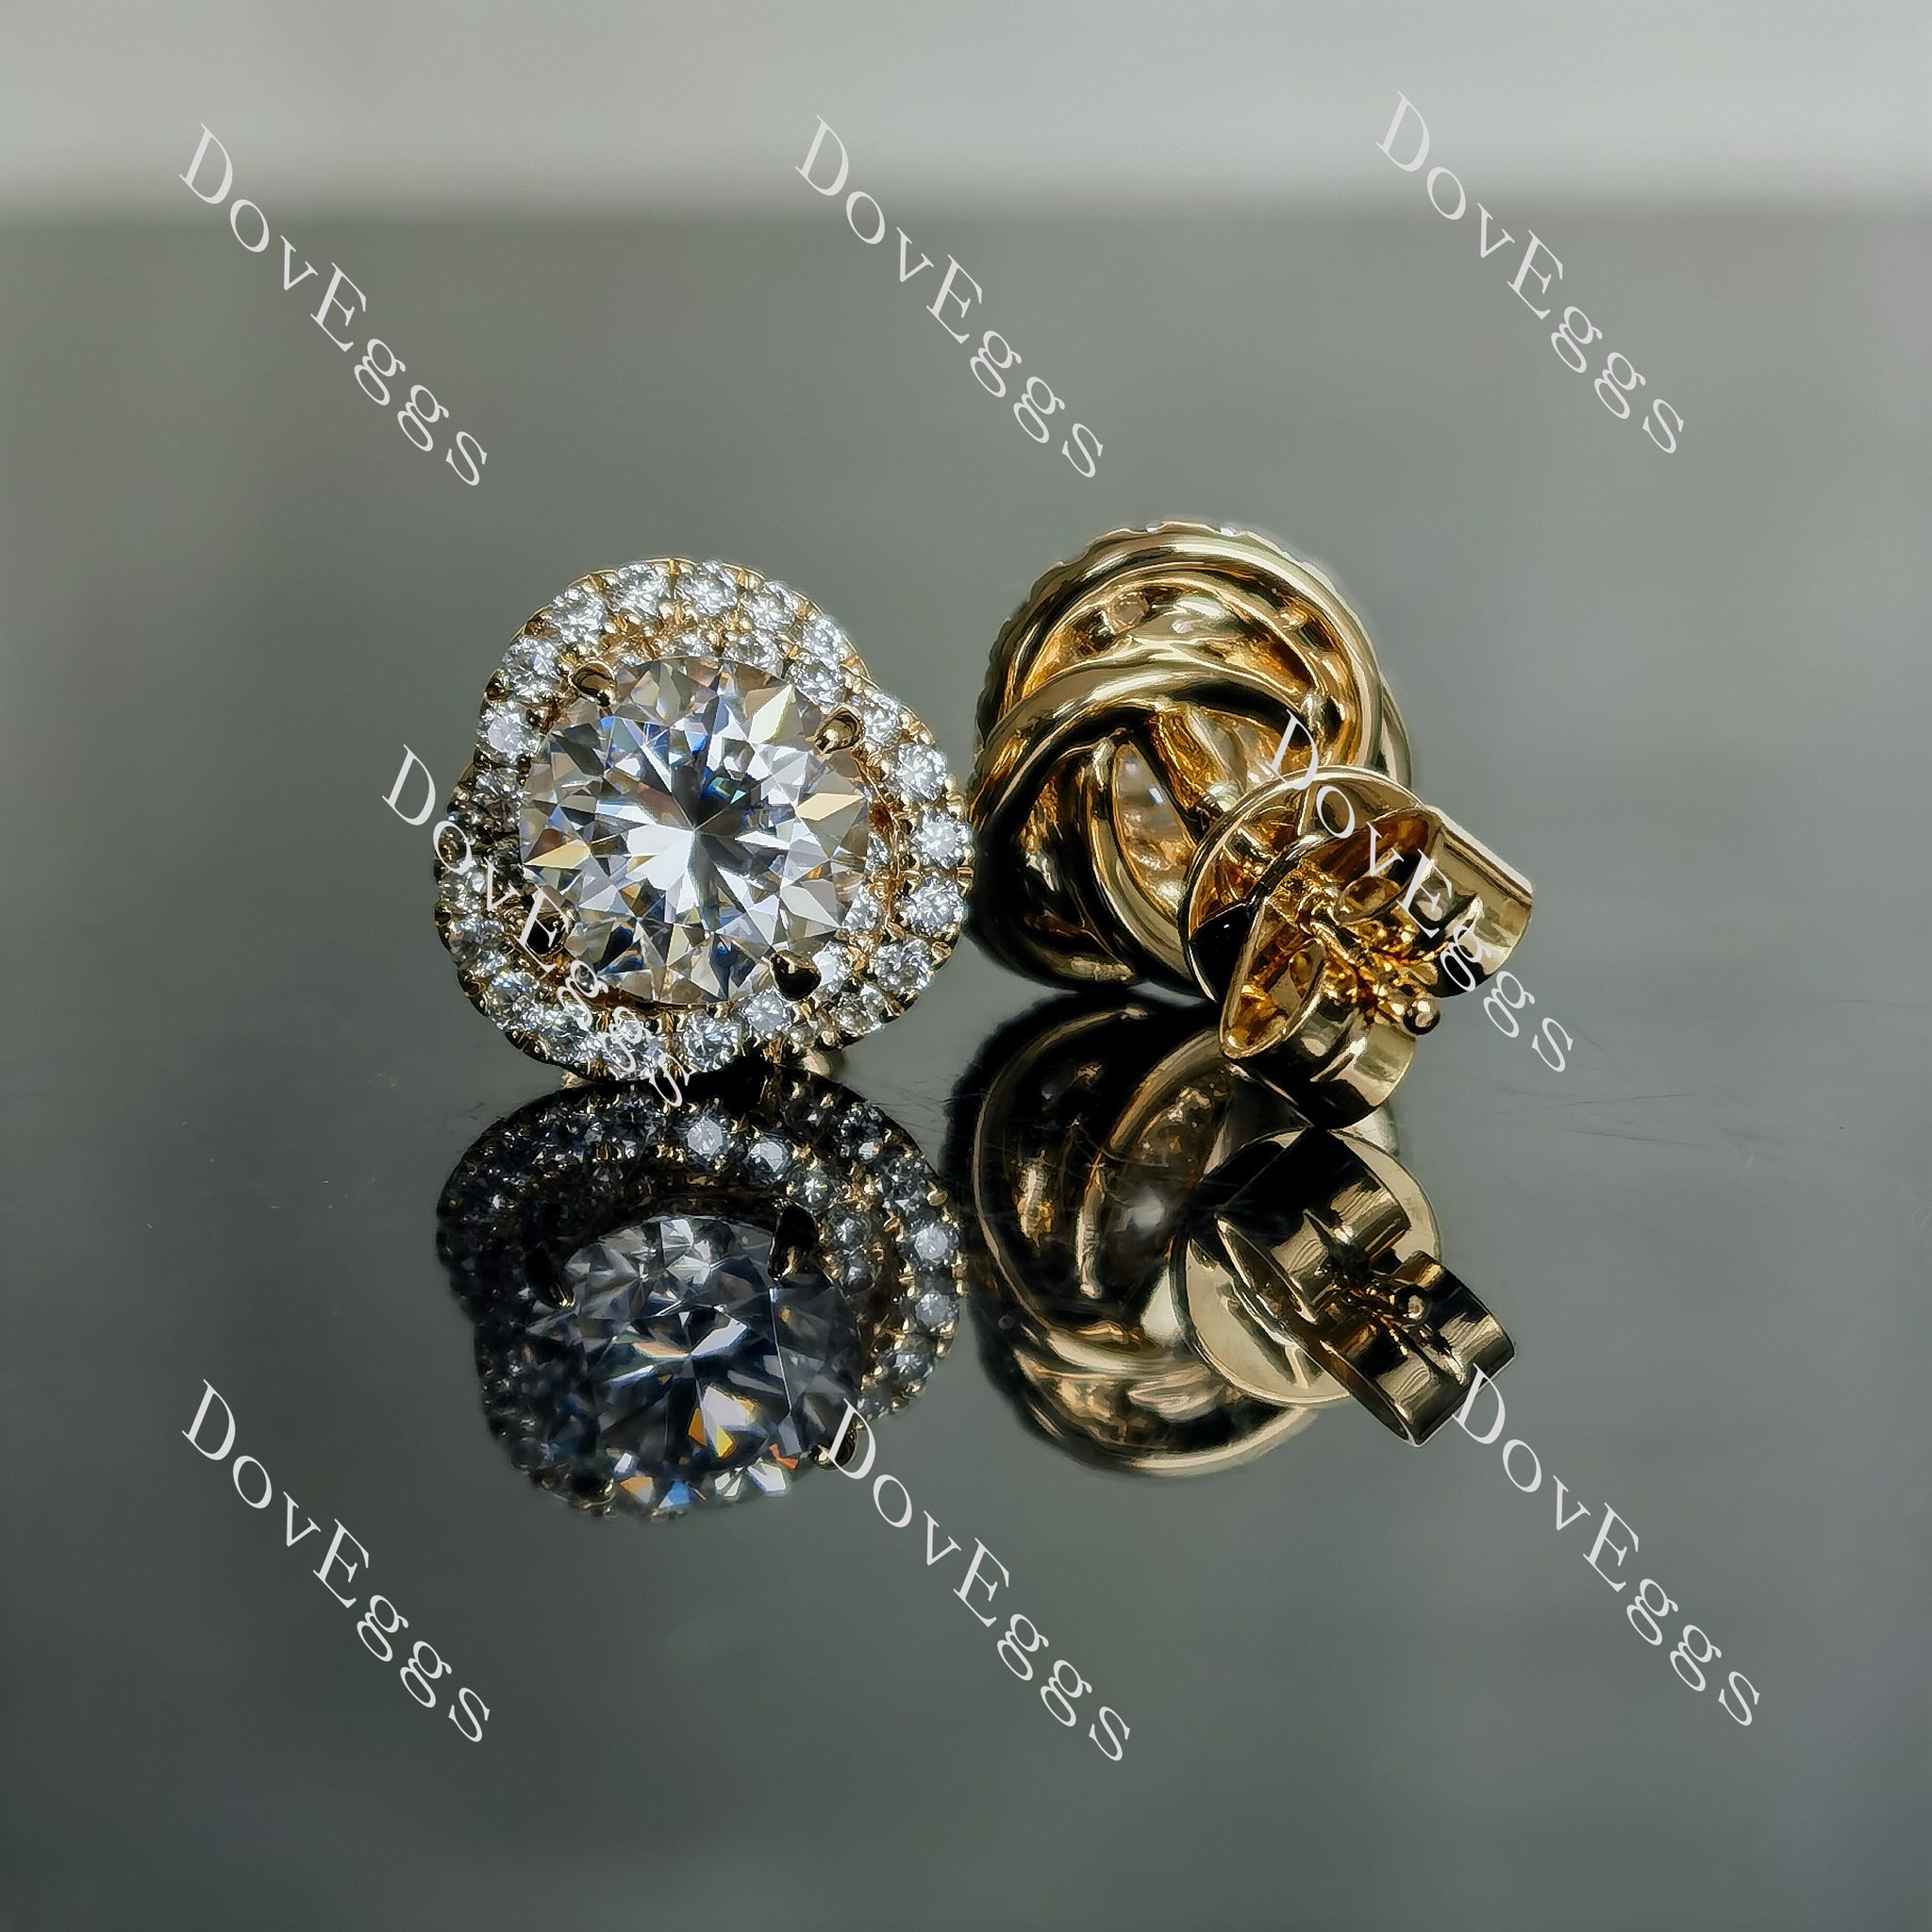 Doveggs flower shape halo round moissanite stud earrings for women